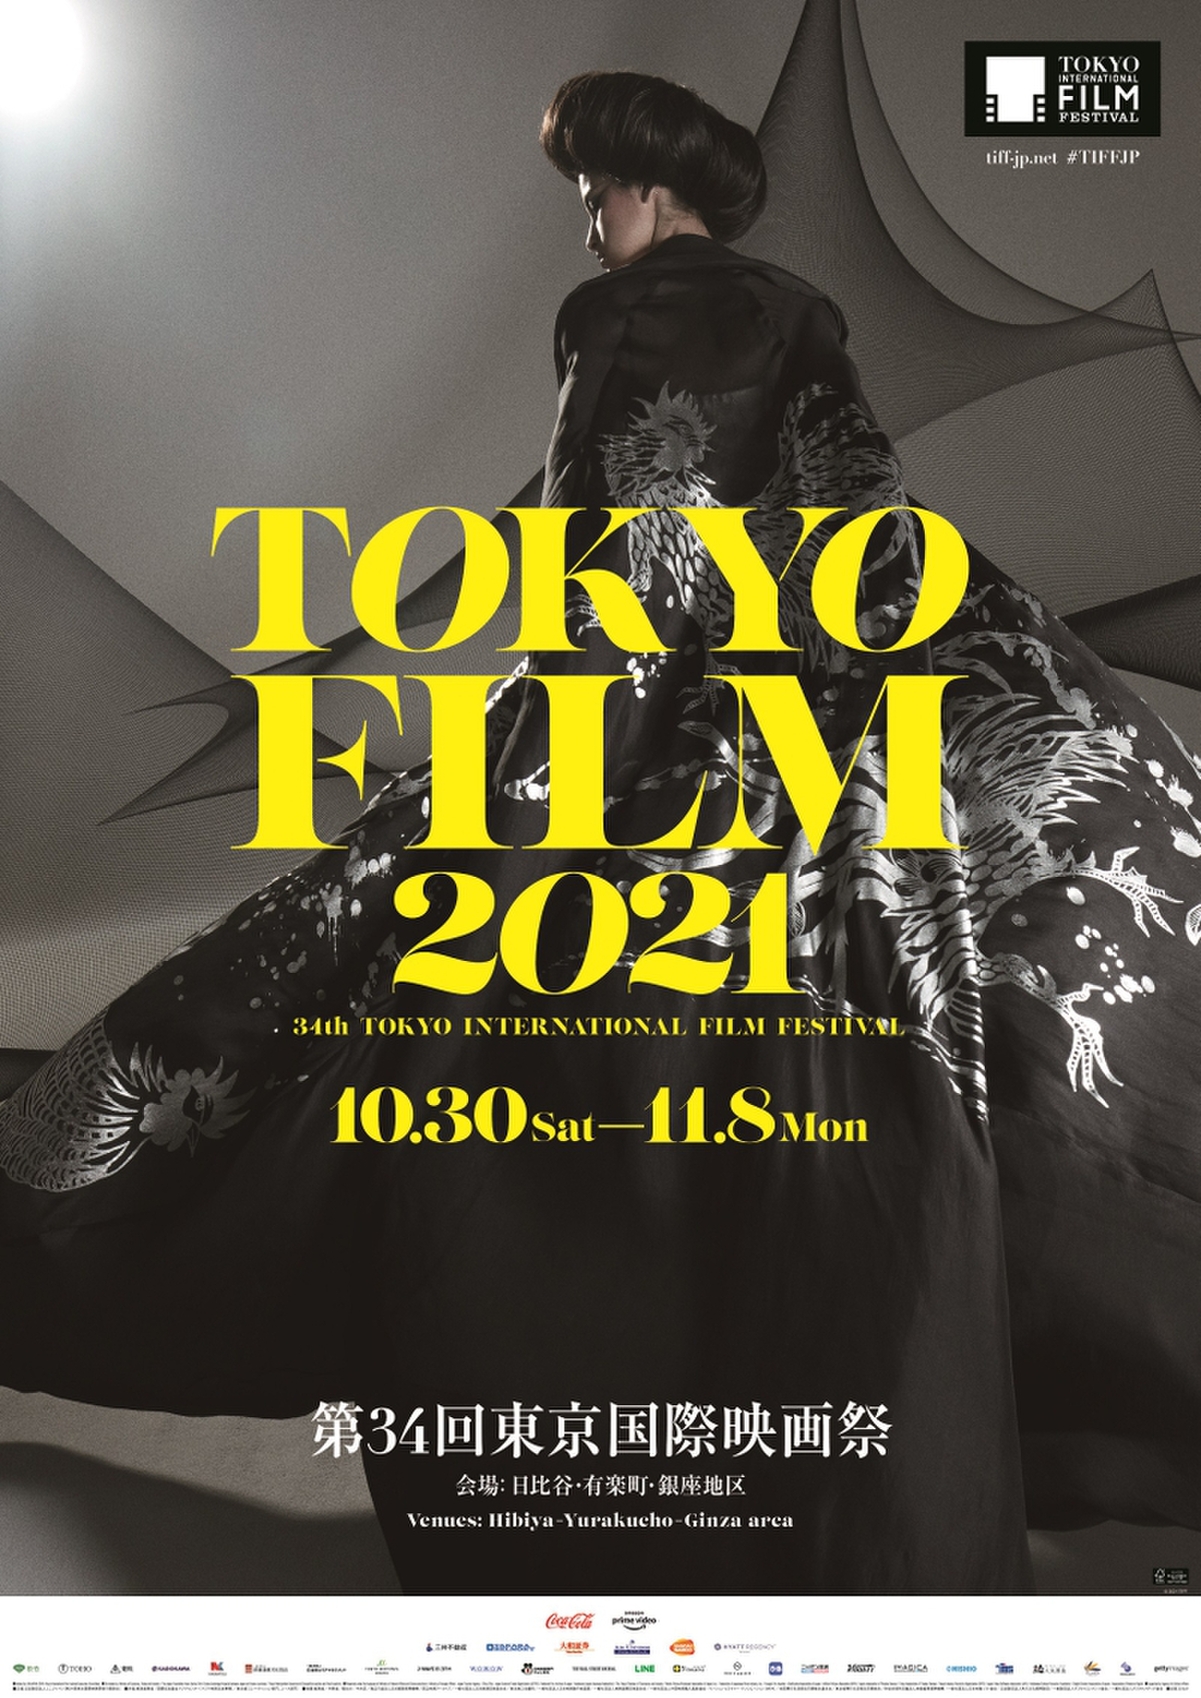 第34回東京国際映画祭ポスター完成 コシノジュンコがデザイン 映画ニュース 映画 Com